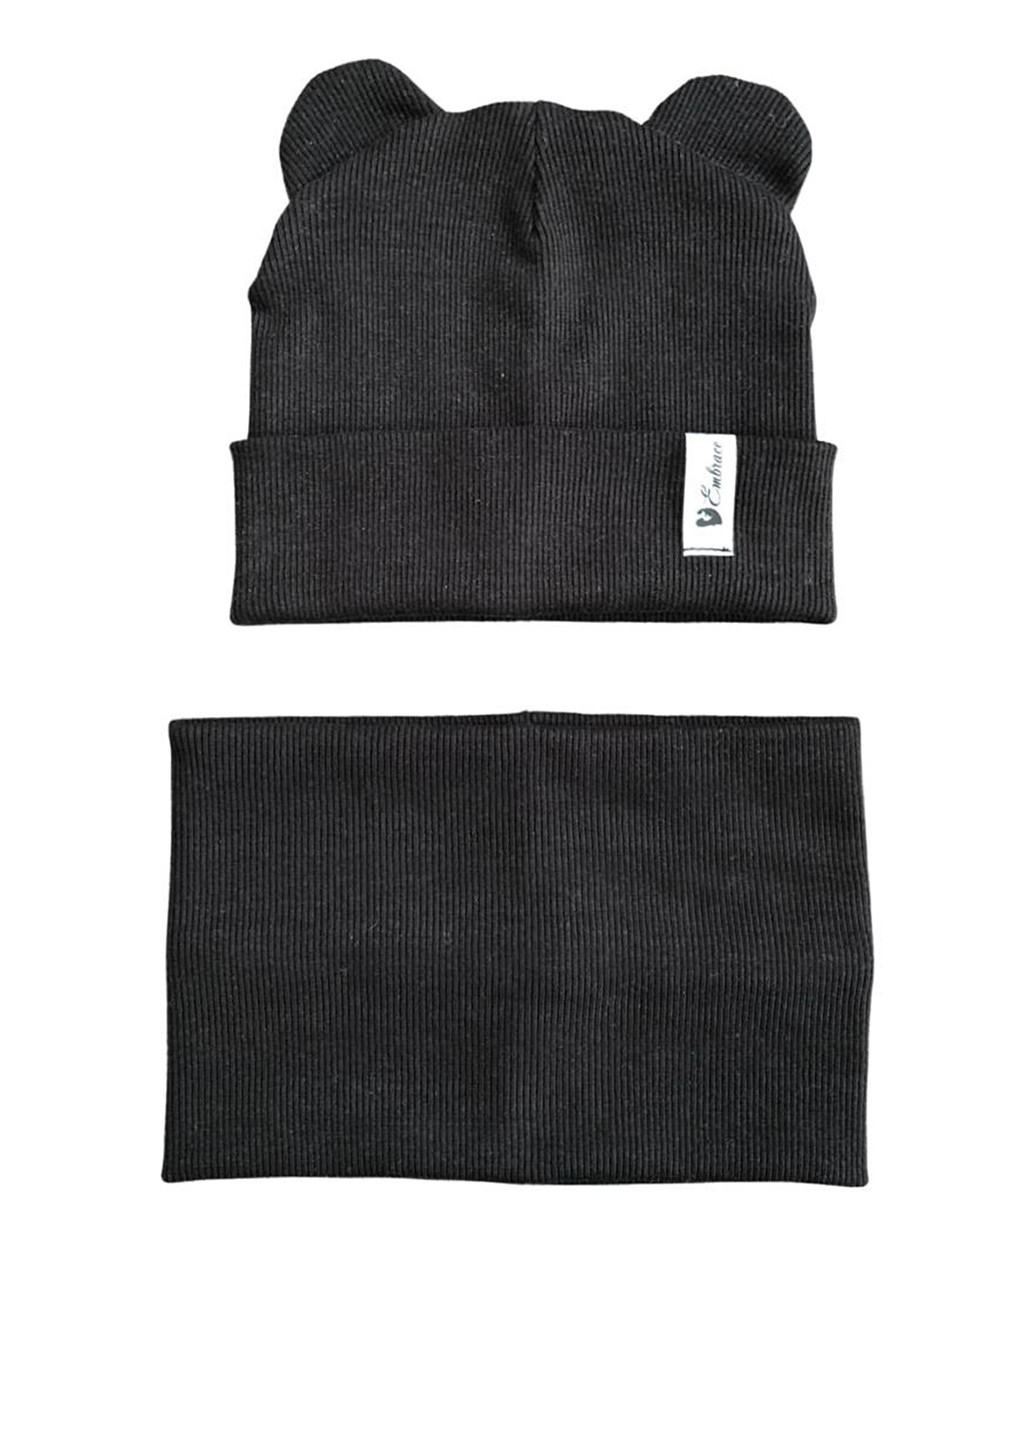 Комплект (шапка, шарф-снуд) Embrace шапка + шарф-снуд однотонні чорні кежуали бавовна органічна